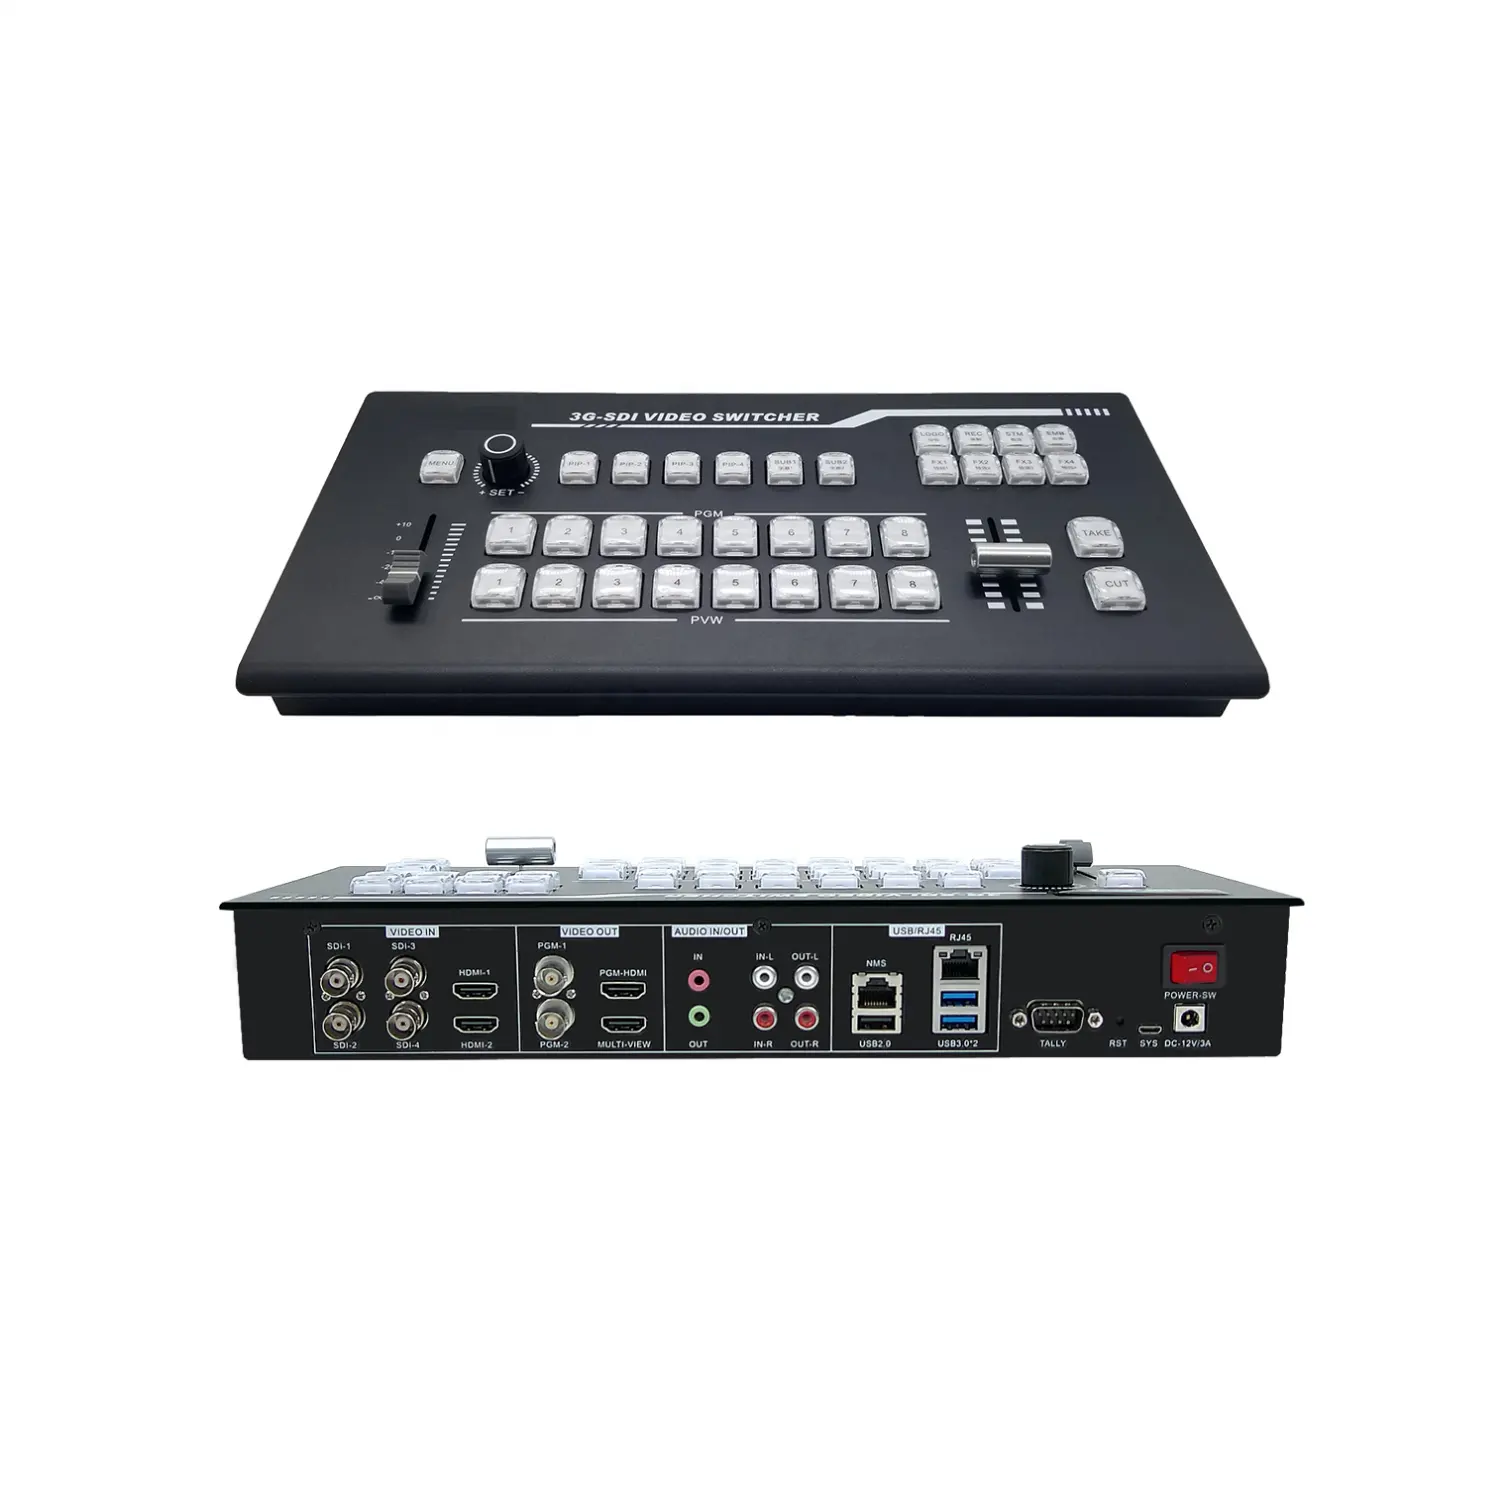 נייד כל אחד שידור ייצור טלוויזיה סטודיו SDI-H DMI 8CH וידאו switcher עבור הזרמה מחשב הקלטת משחקי קונצרטים